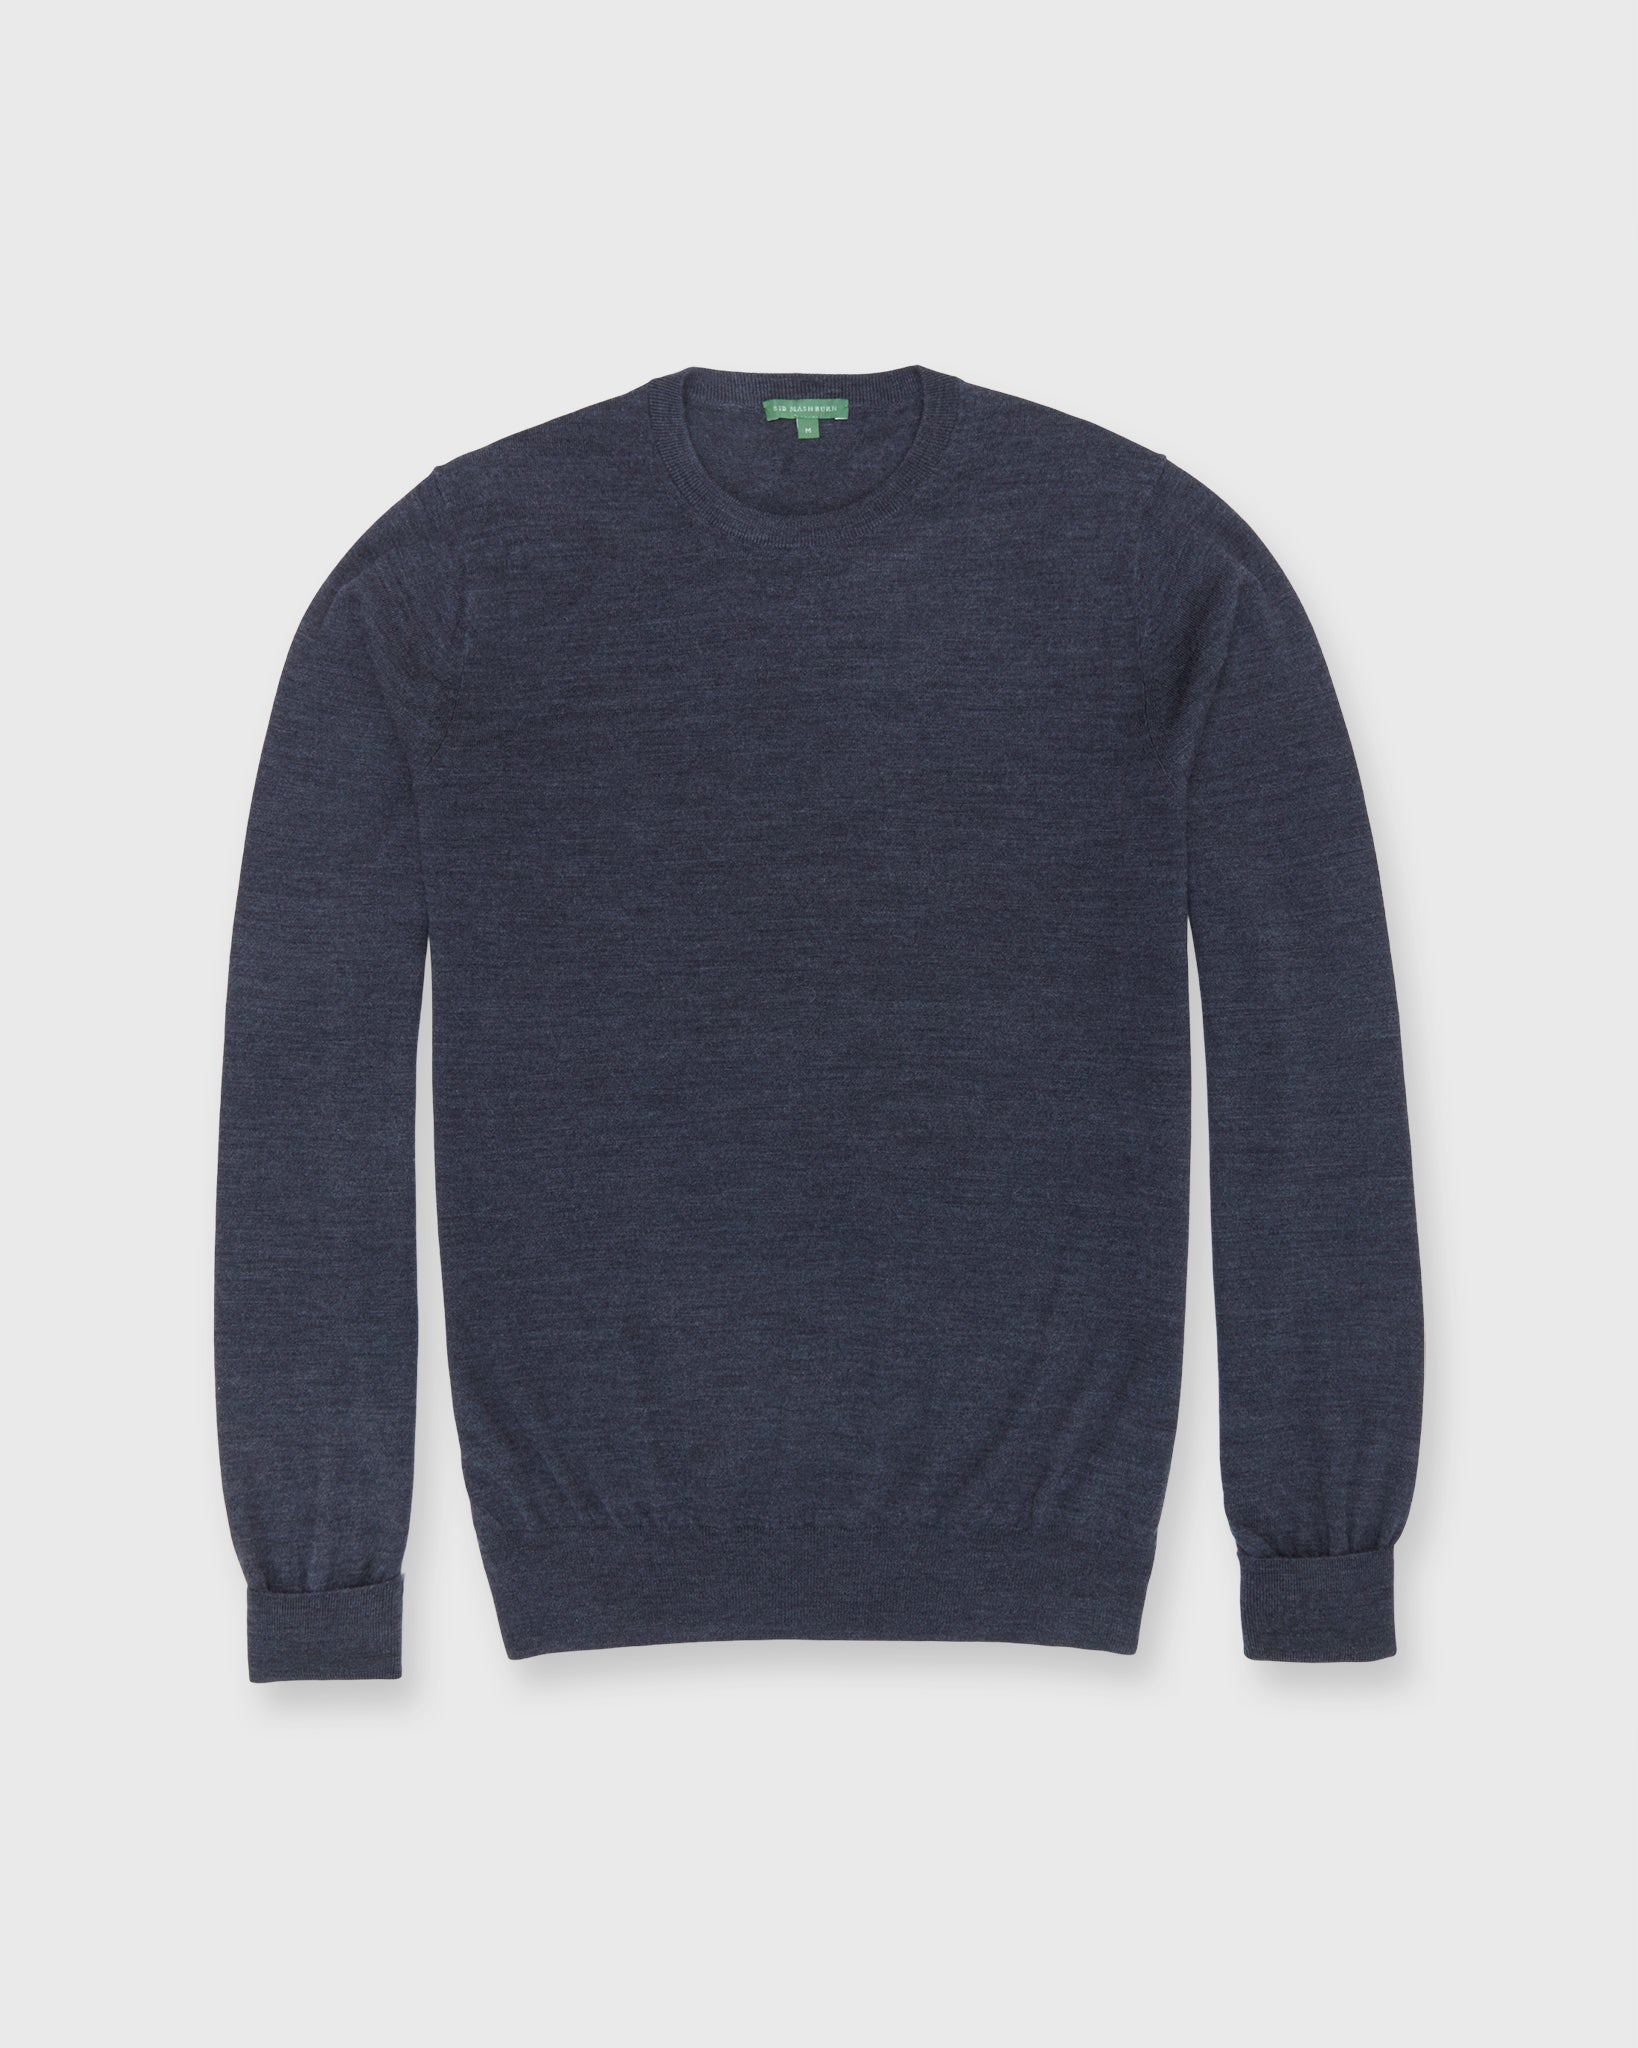 Fine-Gauge Crewneck Sweater in Coal Escorial Wool